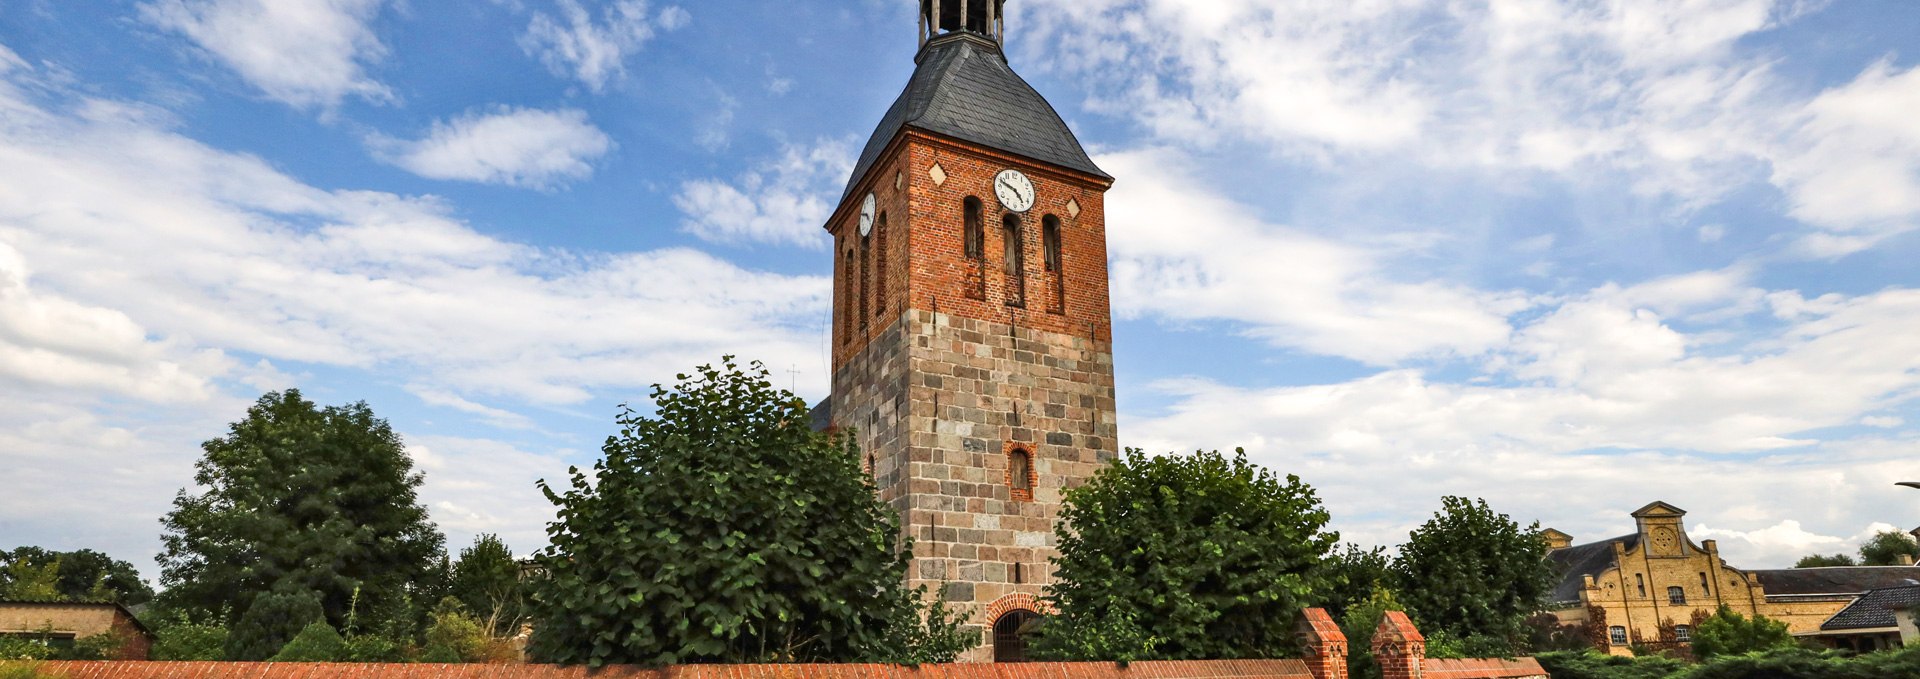 Dorfkirche Bristow_1, © TMV/Gohlke